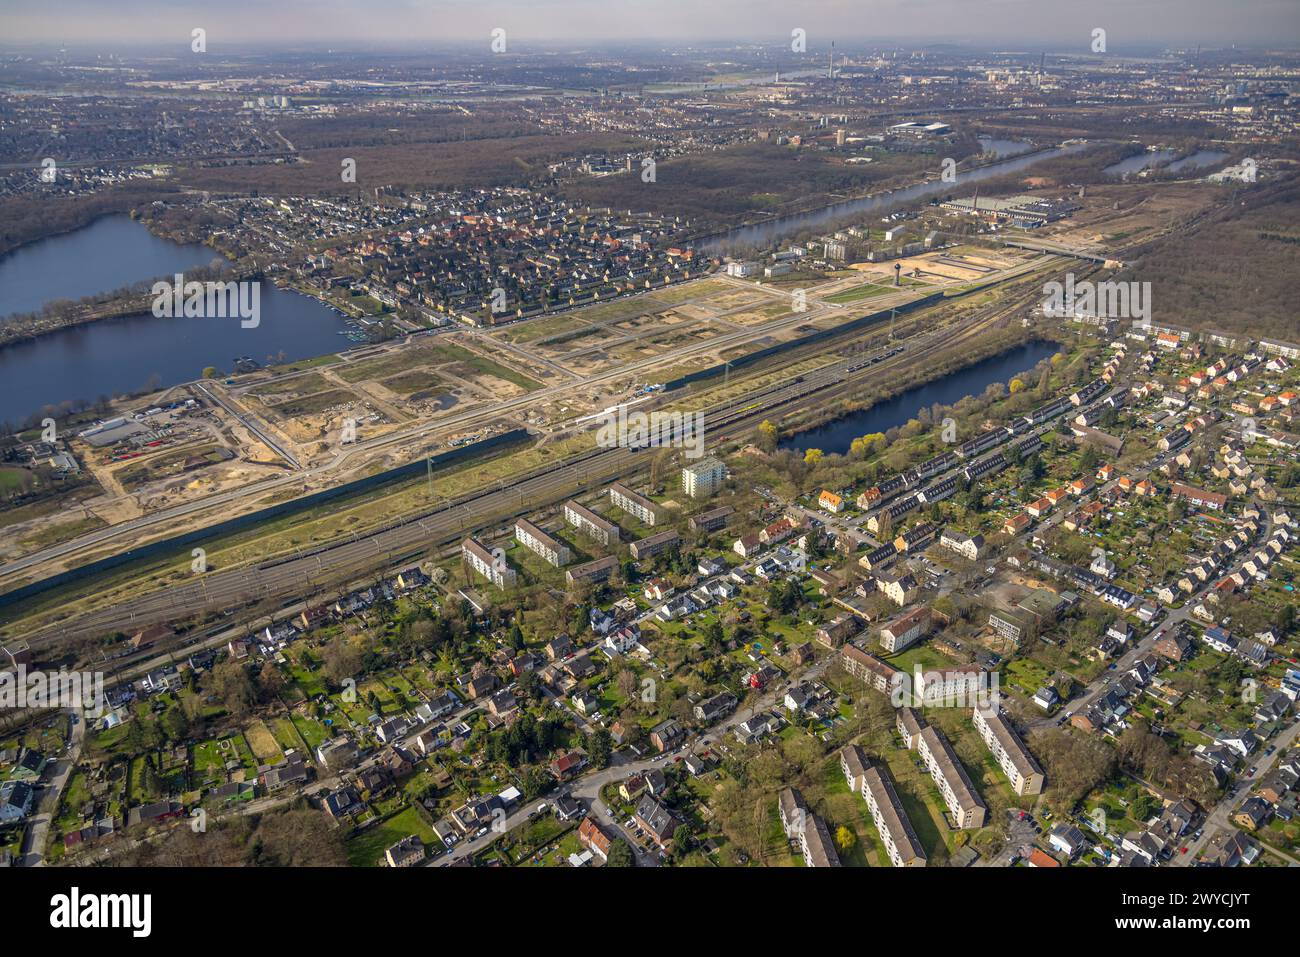 Luftaufnahme, Baustelle für geplante Duisburger Wohnquartier am ehemaligen Rangierbahnhof Wedau, an der Sechs-Seen-Platte und Regatta cou Stockfoto